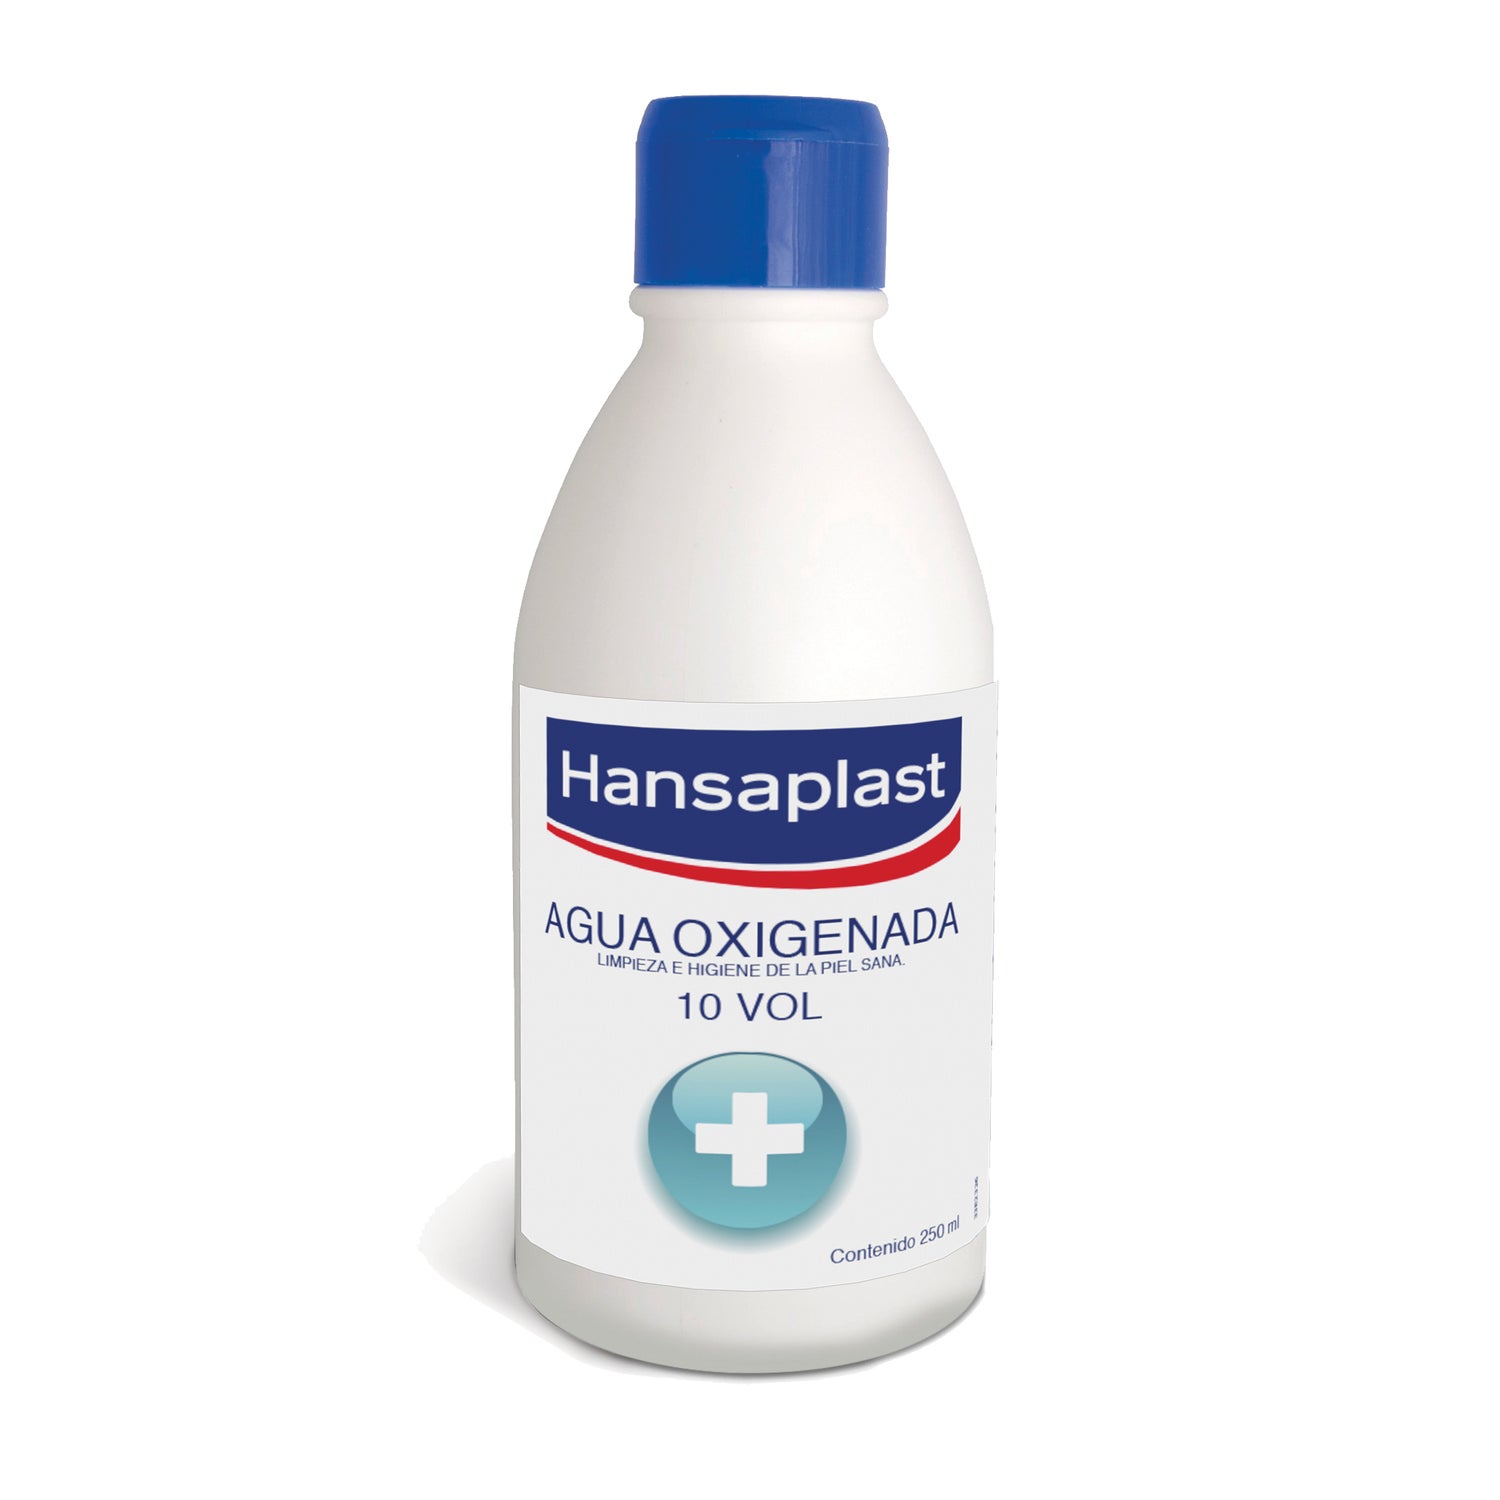 Hansaplast Eau oxygénée 10 volumes (250 ml), Désinfectant nettoyage et  hygiène de la peau, Antiseptique pour désinfection des petites plaies ou